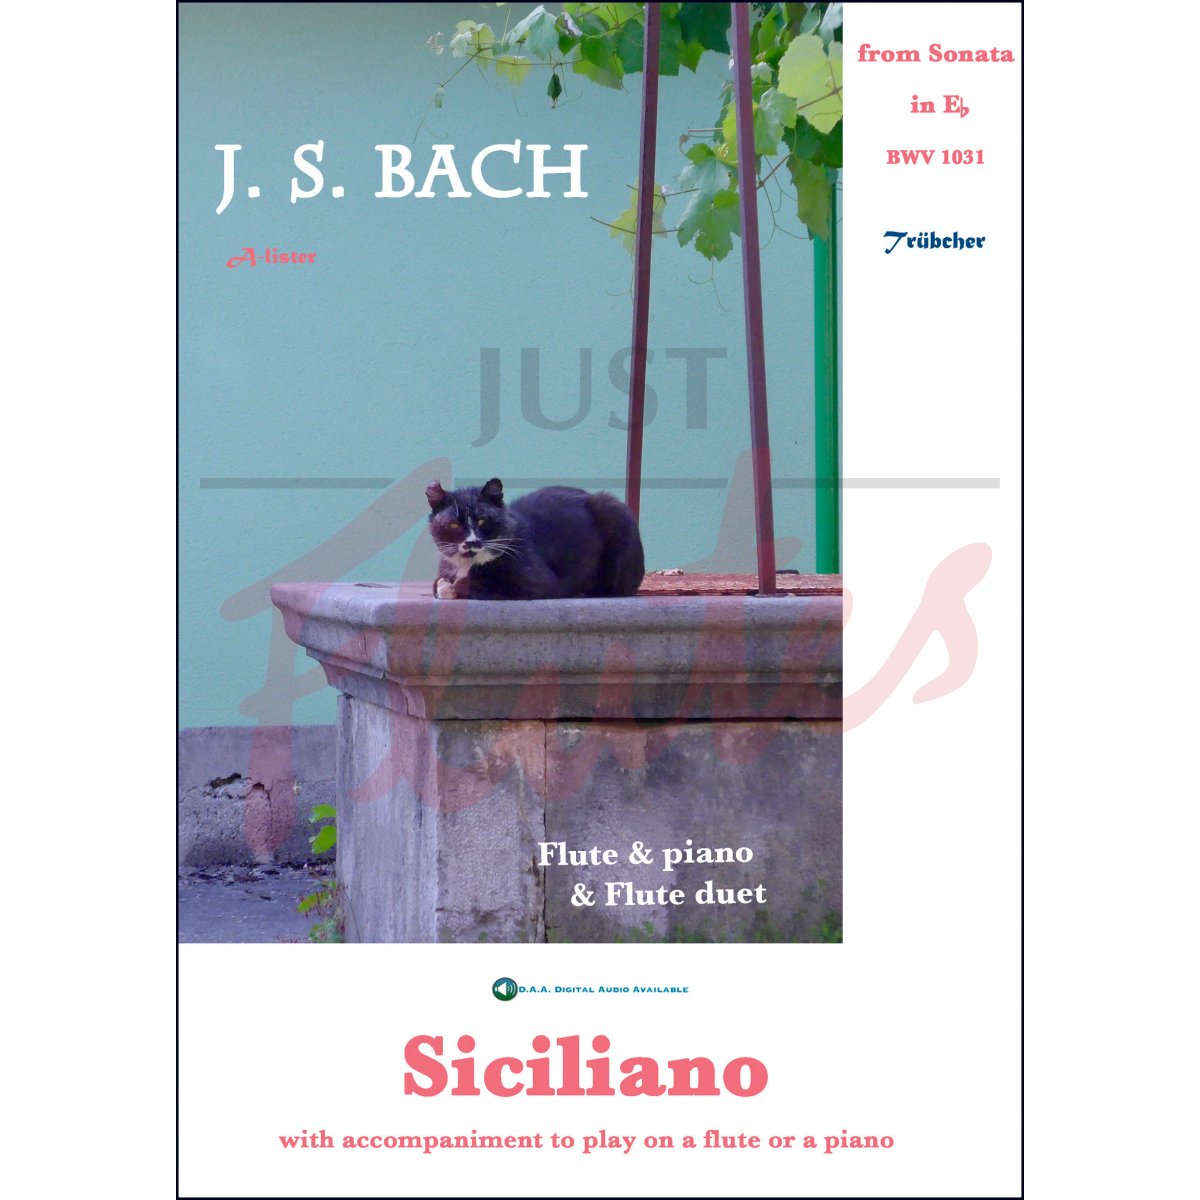 Siciliano from Sonata in Eb major